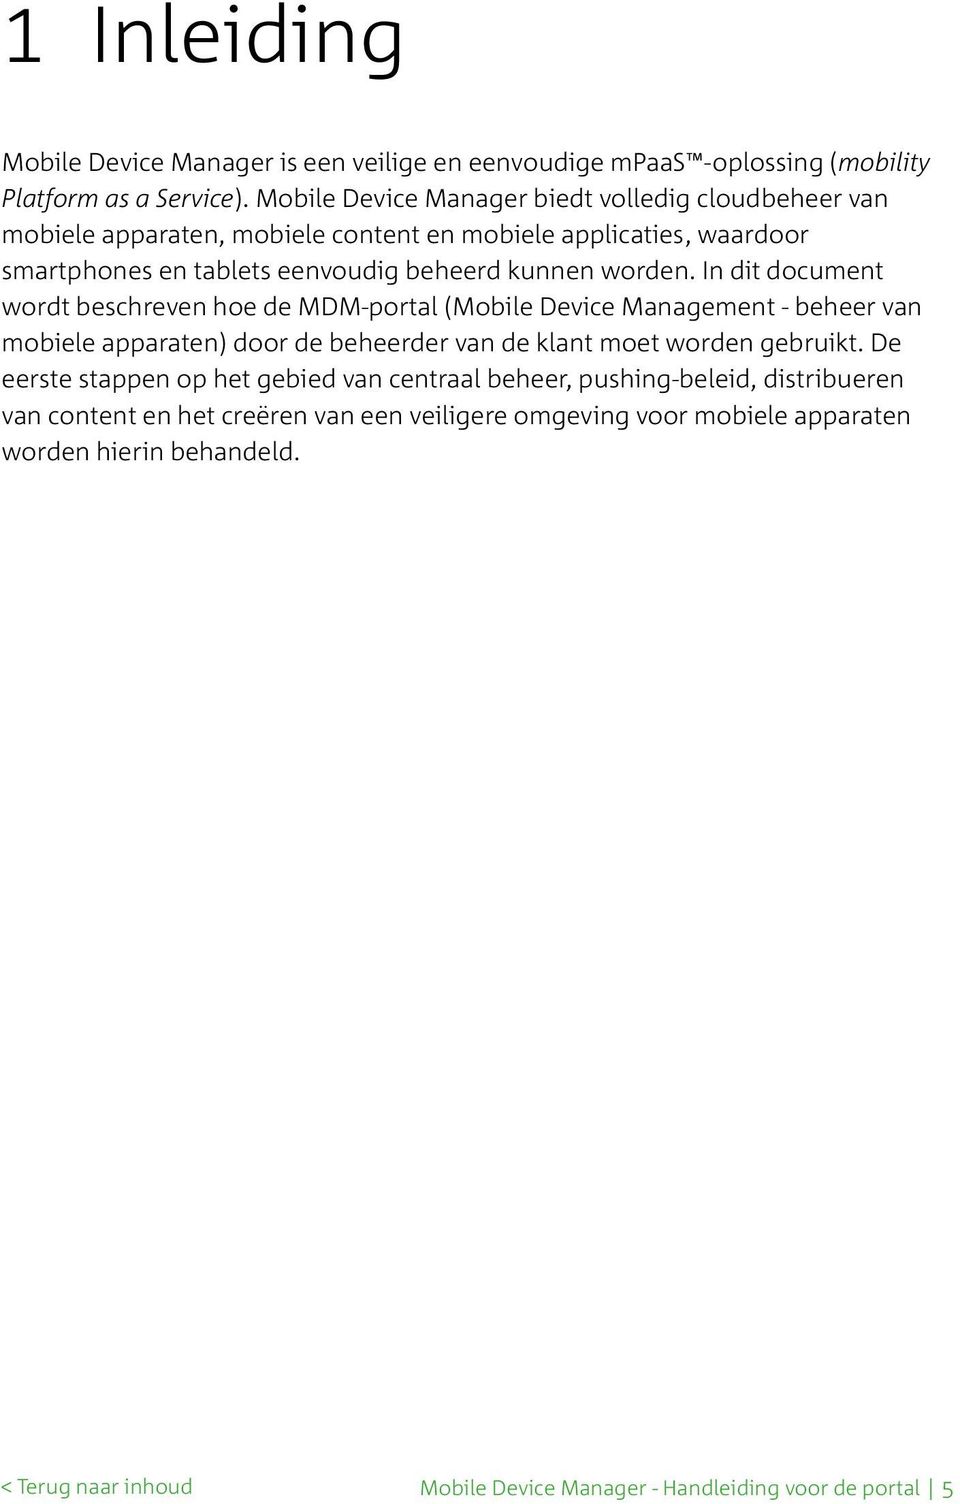 worden. In dit document wordt beschreven hoe de MDM-portal (Mobile Device Management - beheer van mobiele apparaten) door de beheerder van de klant moet worden gebruikt.